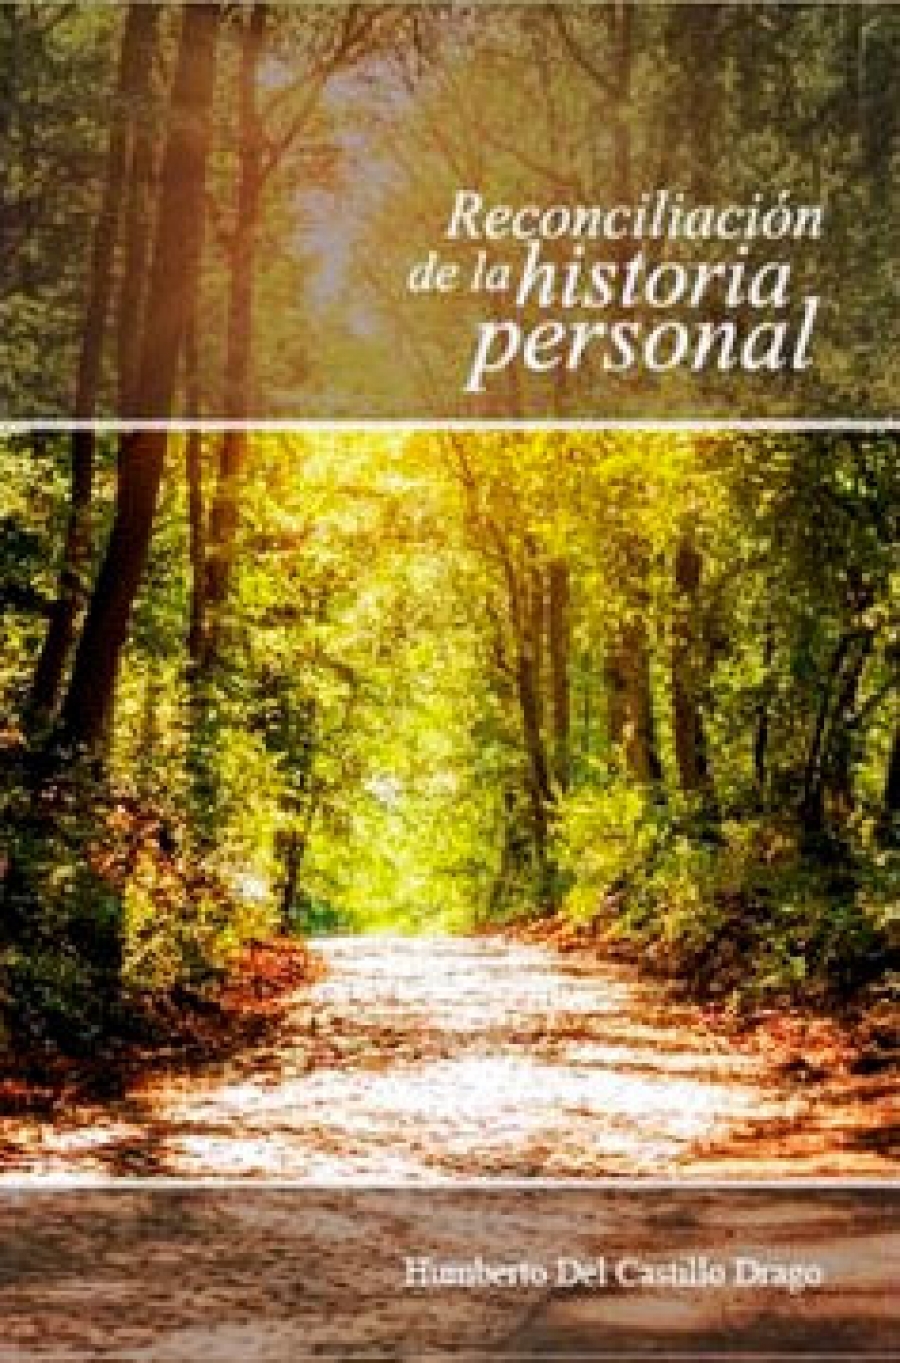 Centro Areté publica nuevo libro sobre “Reconciliación de la historia Personal”